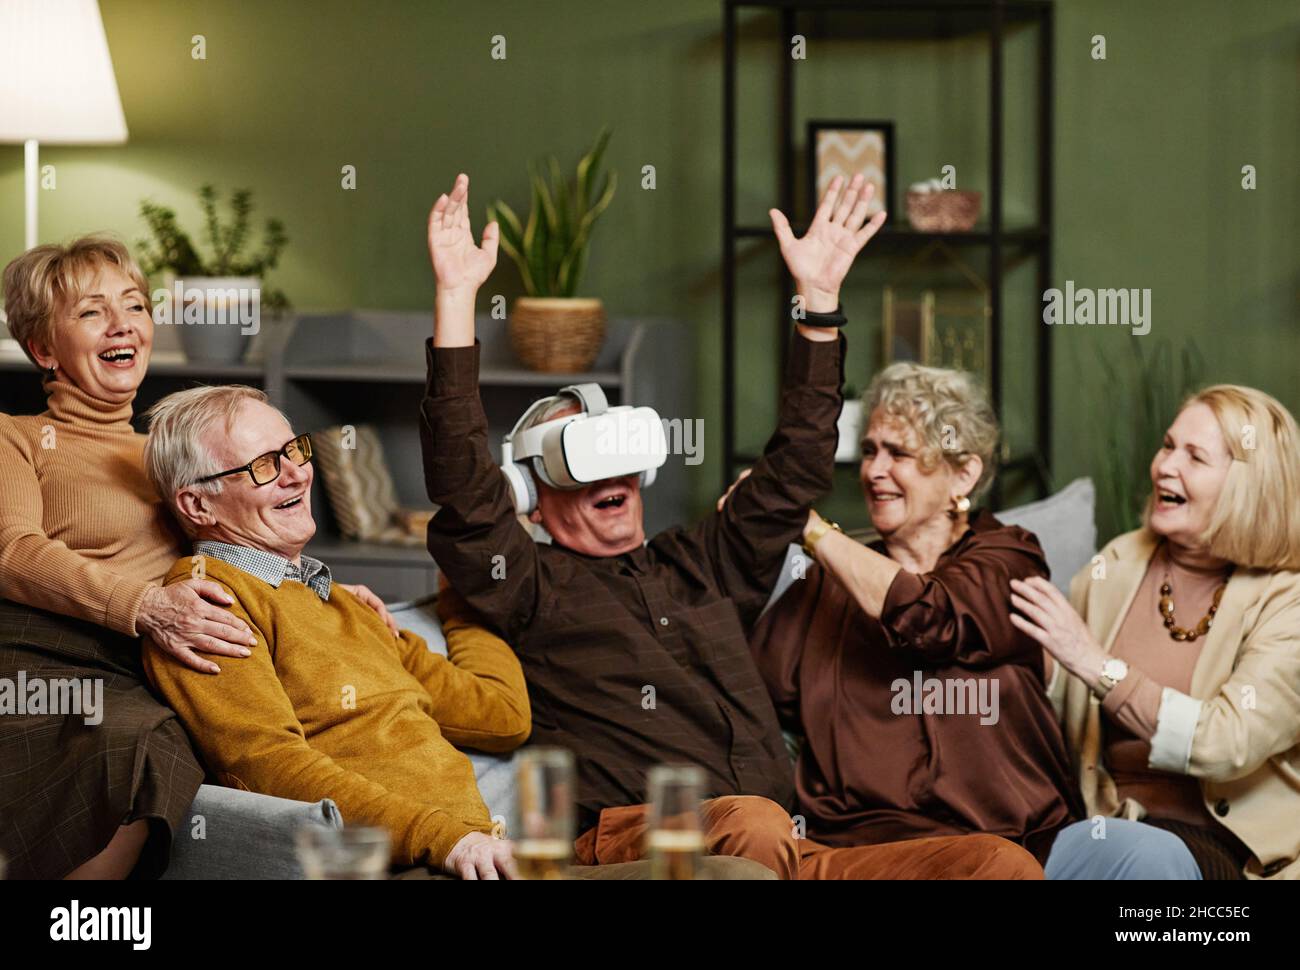 Fröhlicher alter kaukasischer Mann, der auf der Couch saß und moderne VR-Brillen genoss, während sich seine vier Freunde um ihn versammelten und sie beobachteten Stockfoto